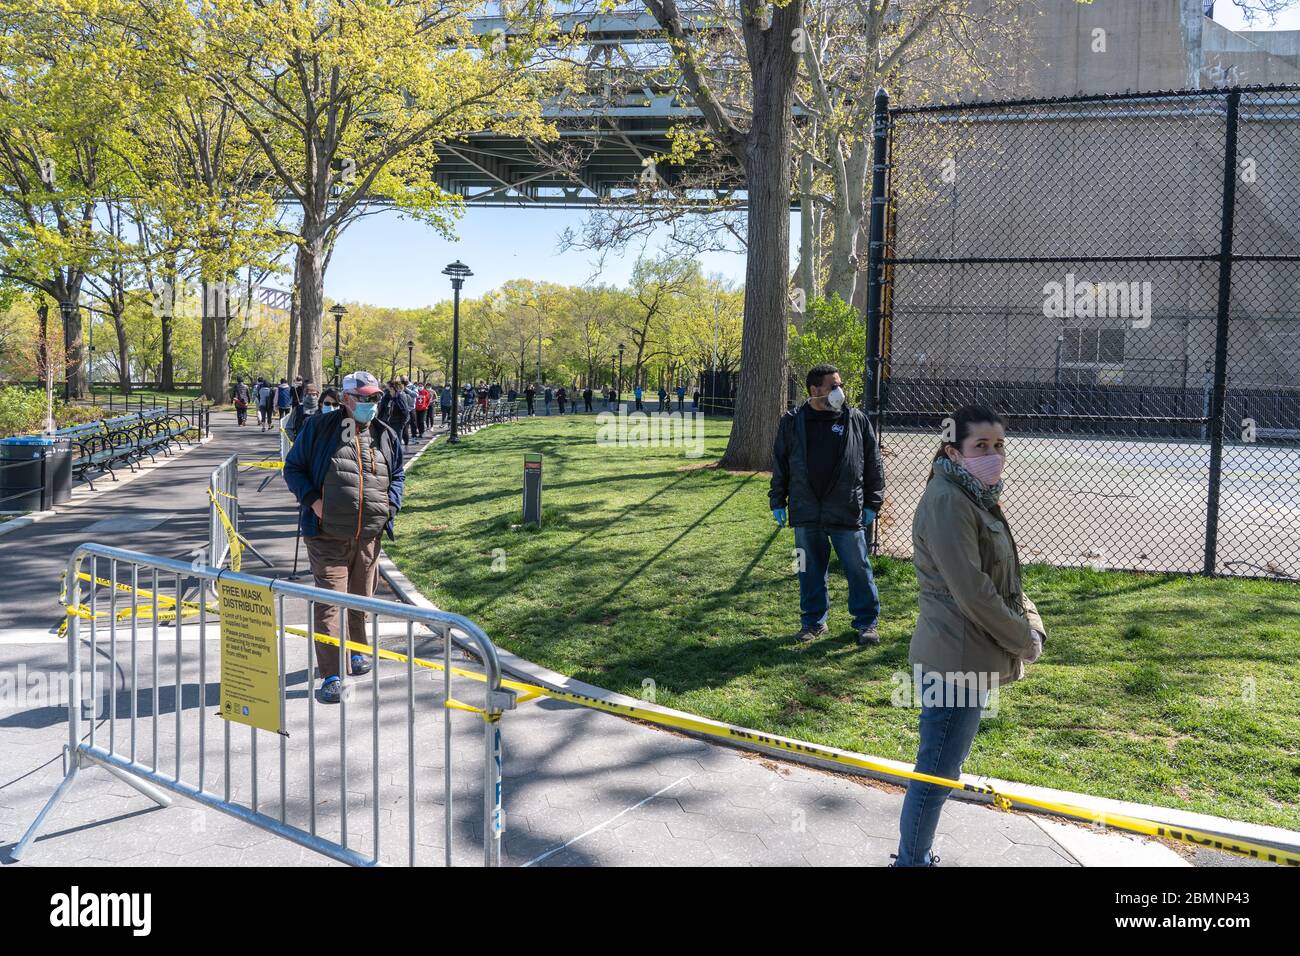 NEW YORK, NY - 10. MAI 2020: Menschen stellen sich in sozialer Distanz für kostenlose Gesichtsmasken aus den NYC Parks im Astoria Park inmitten der Covid-19-Pandemie an. Stockfoto